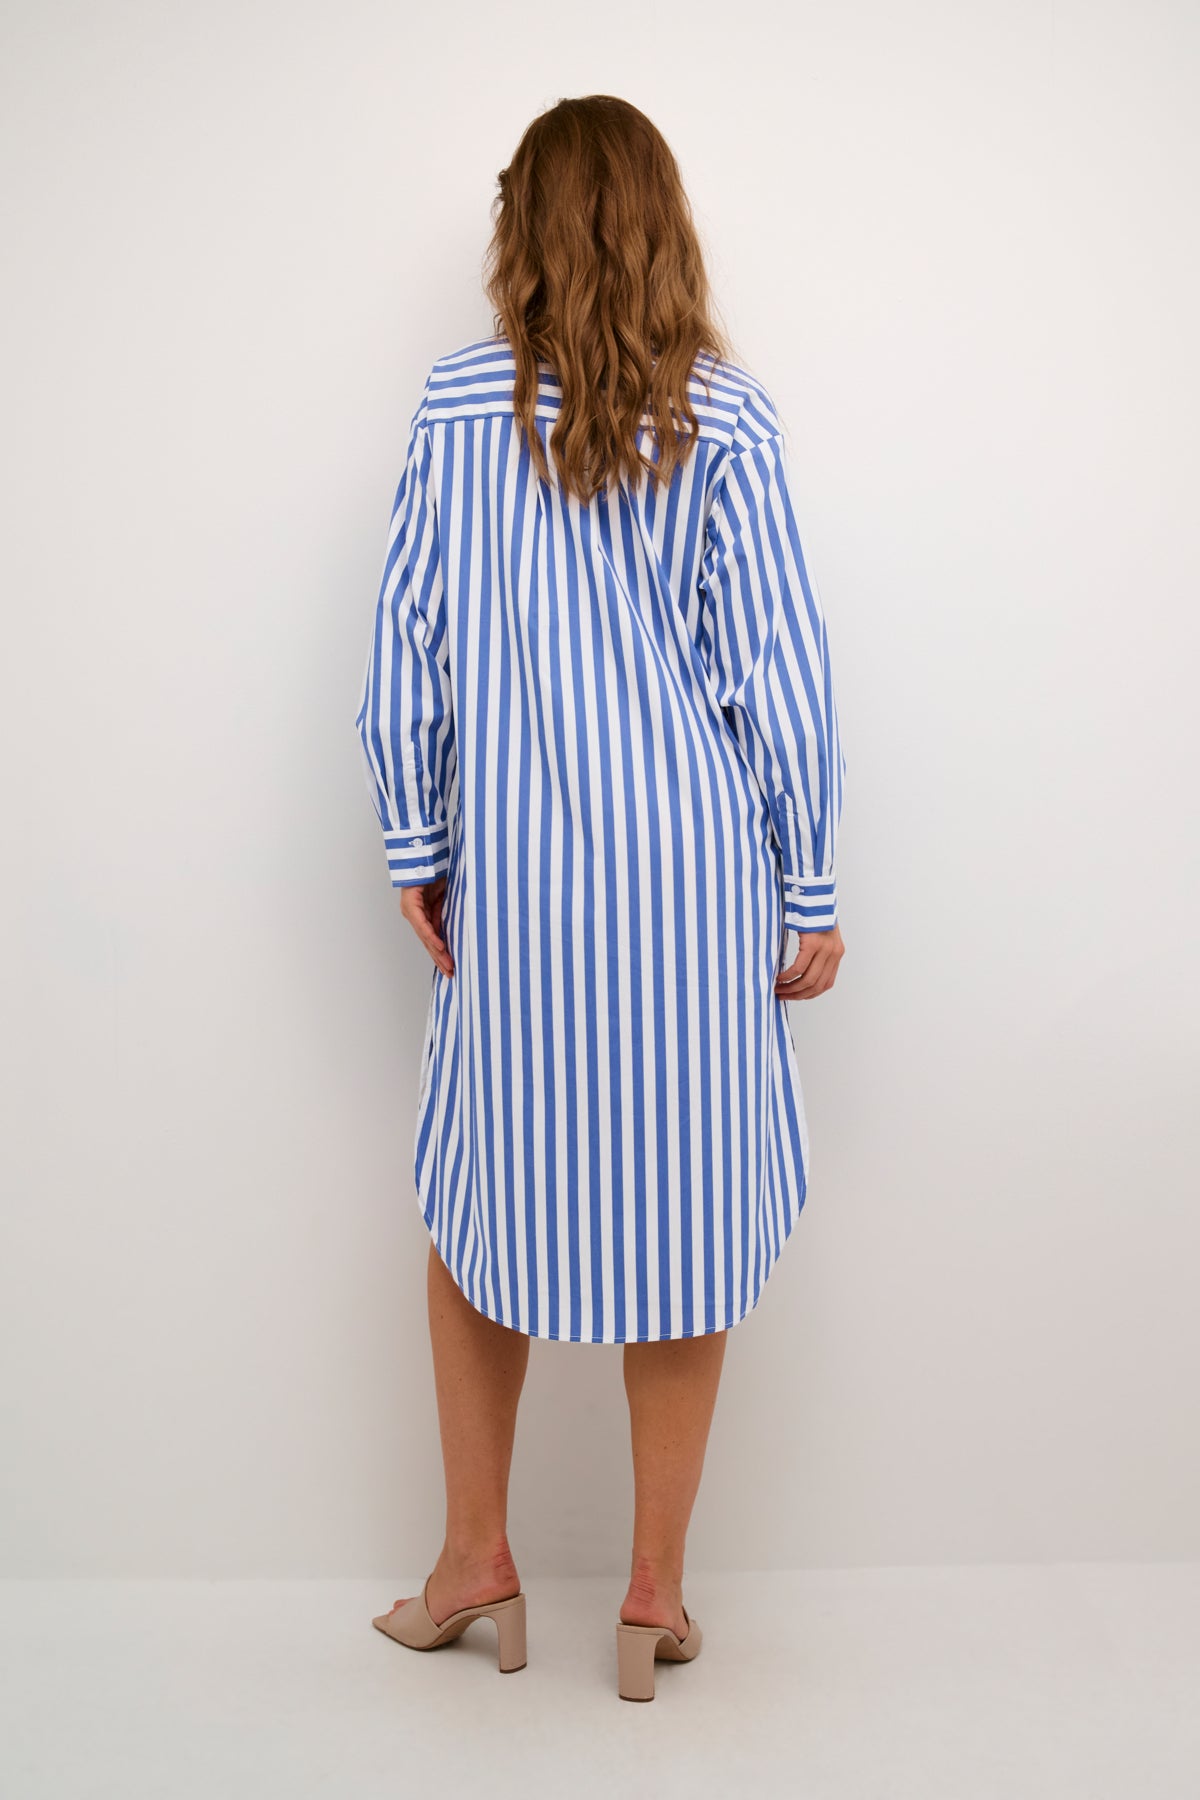 Regina Shirt Dress in Blue/White Stripe